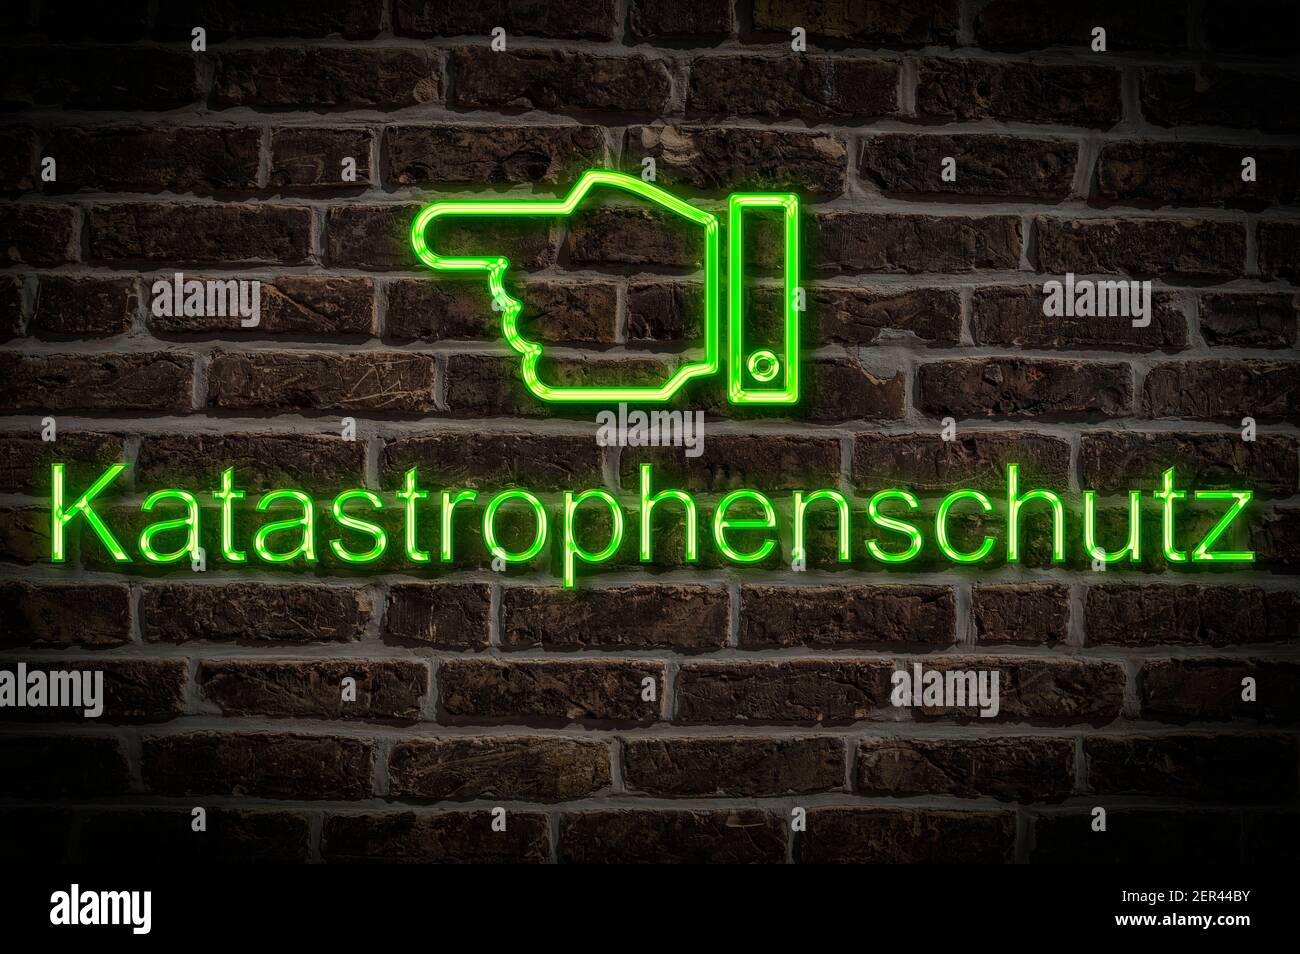 Foto di dettaglio di un cartello al neon su una parete con L'iscrizione Katastrofenschutz (protezione civile) Foto Stock